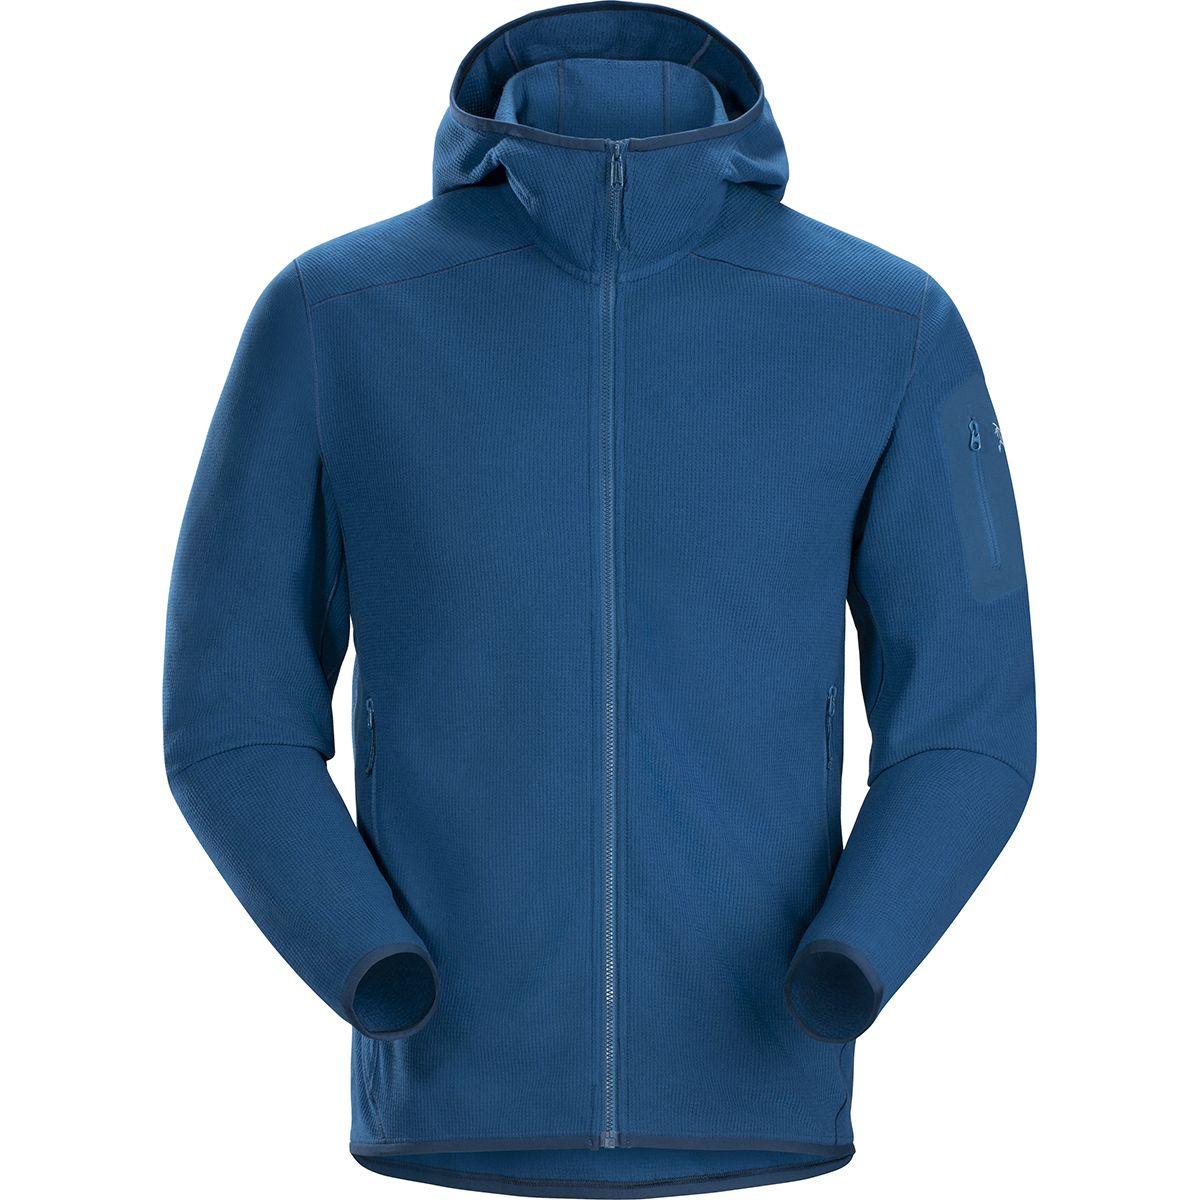 Arc'teryx Delta Lt Hooded Fleece Jacket in Blue for Men - Lyst